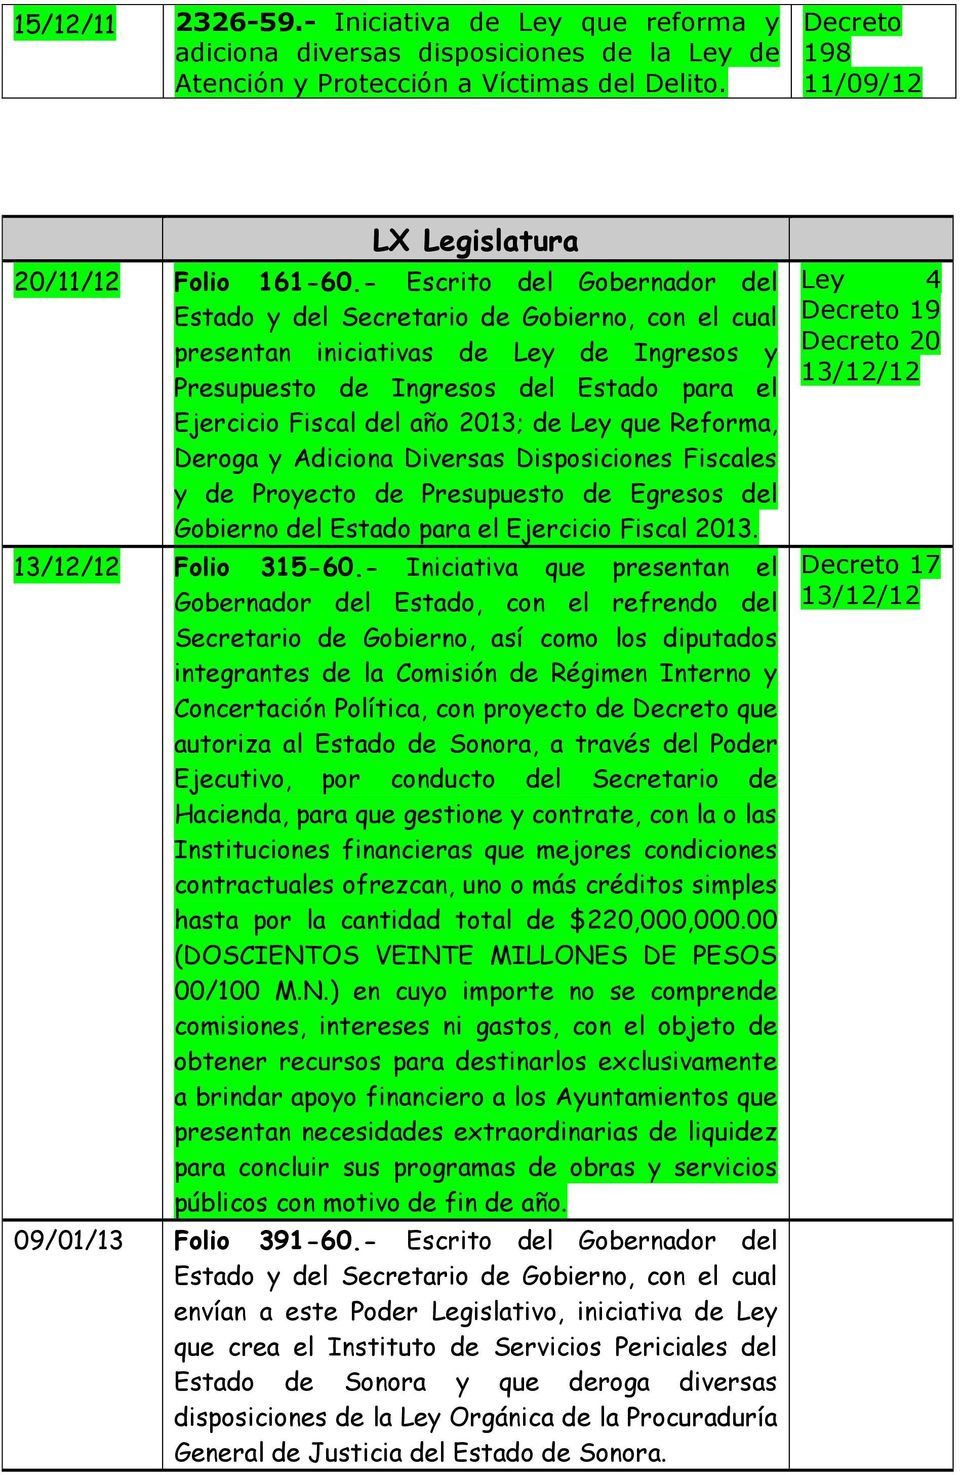 Disposiciones Fiscales y de Proyecto de Presupuesto de Egresos del Gobierno del Estado para el Ejercicio Fiscal 2013. 13/12/12 Folio 315-60.